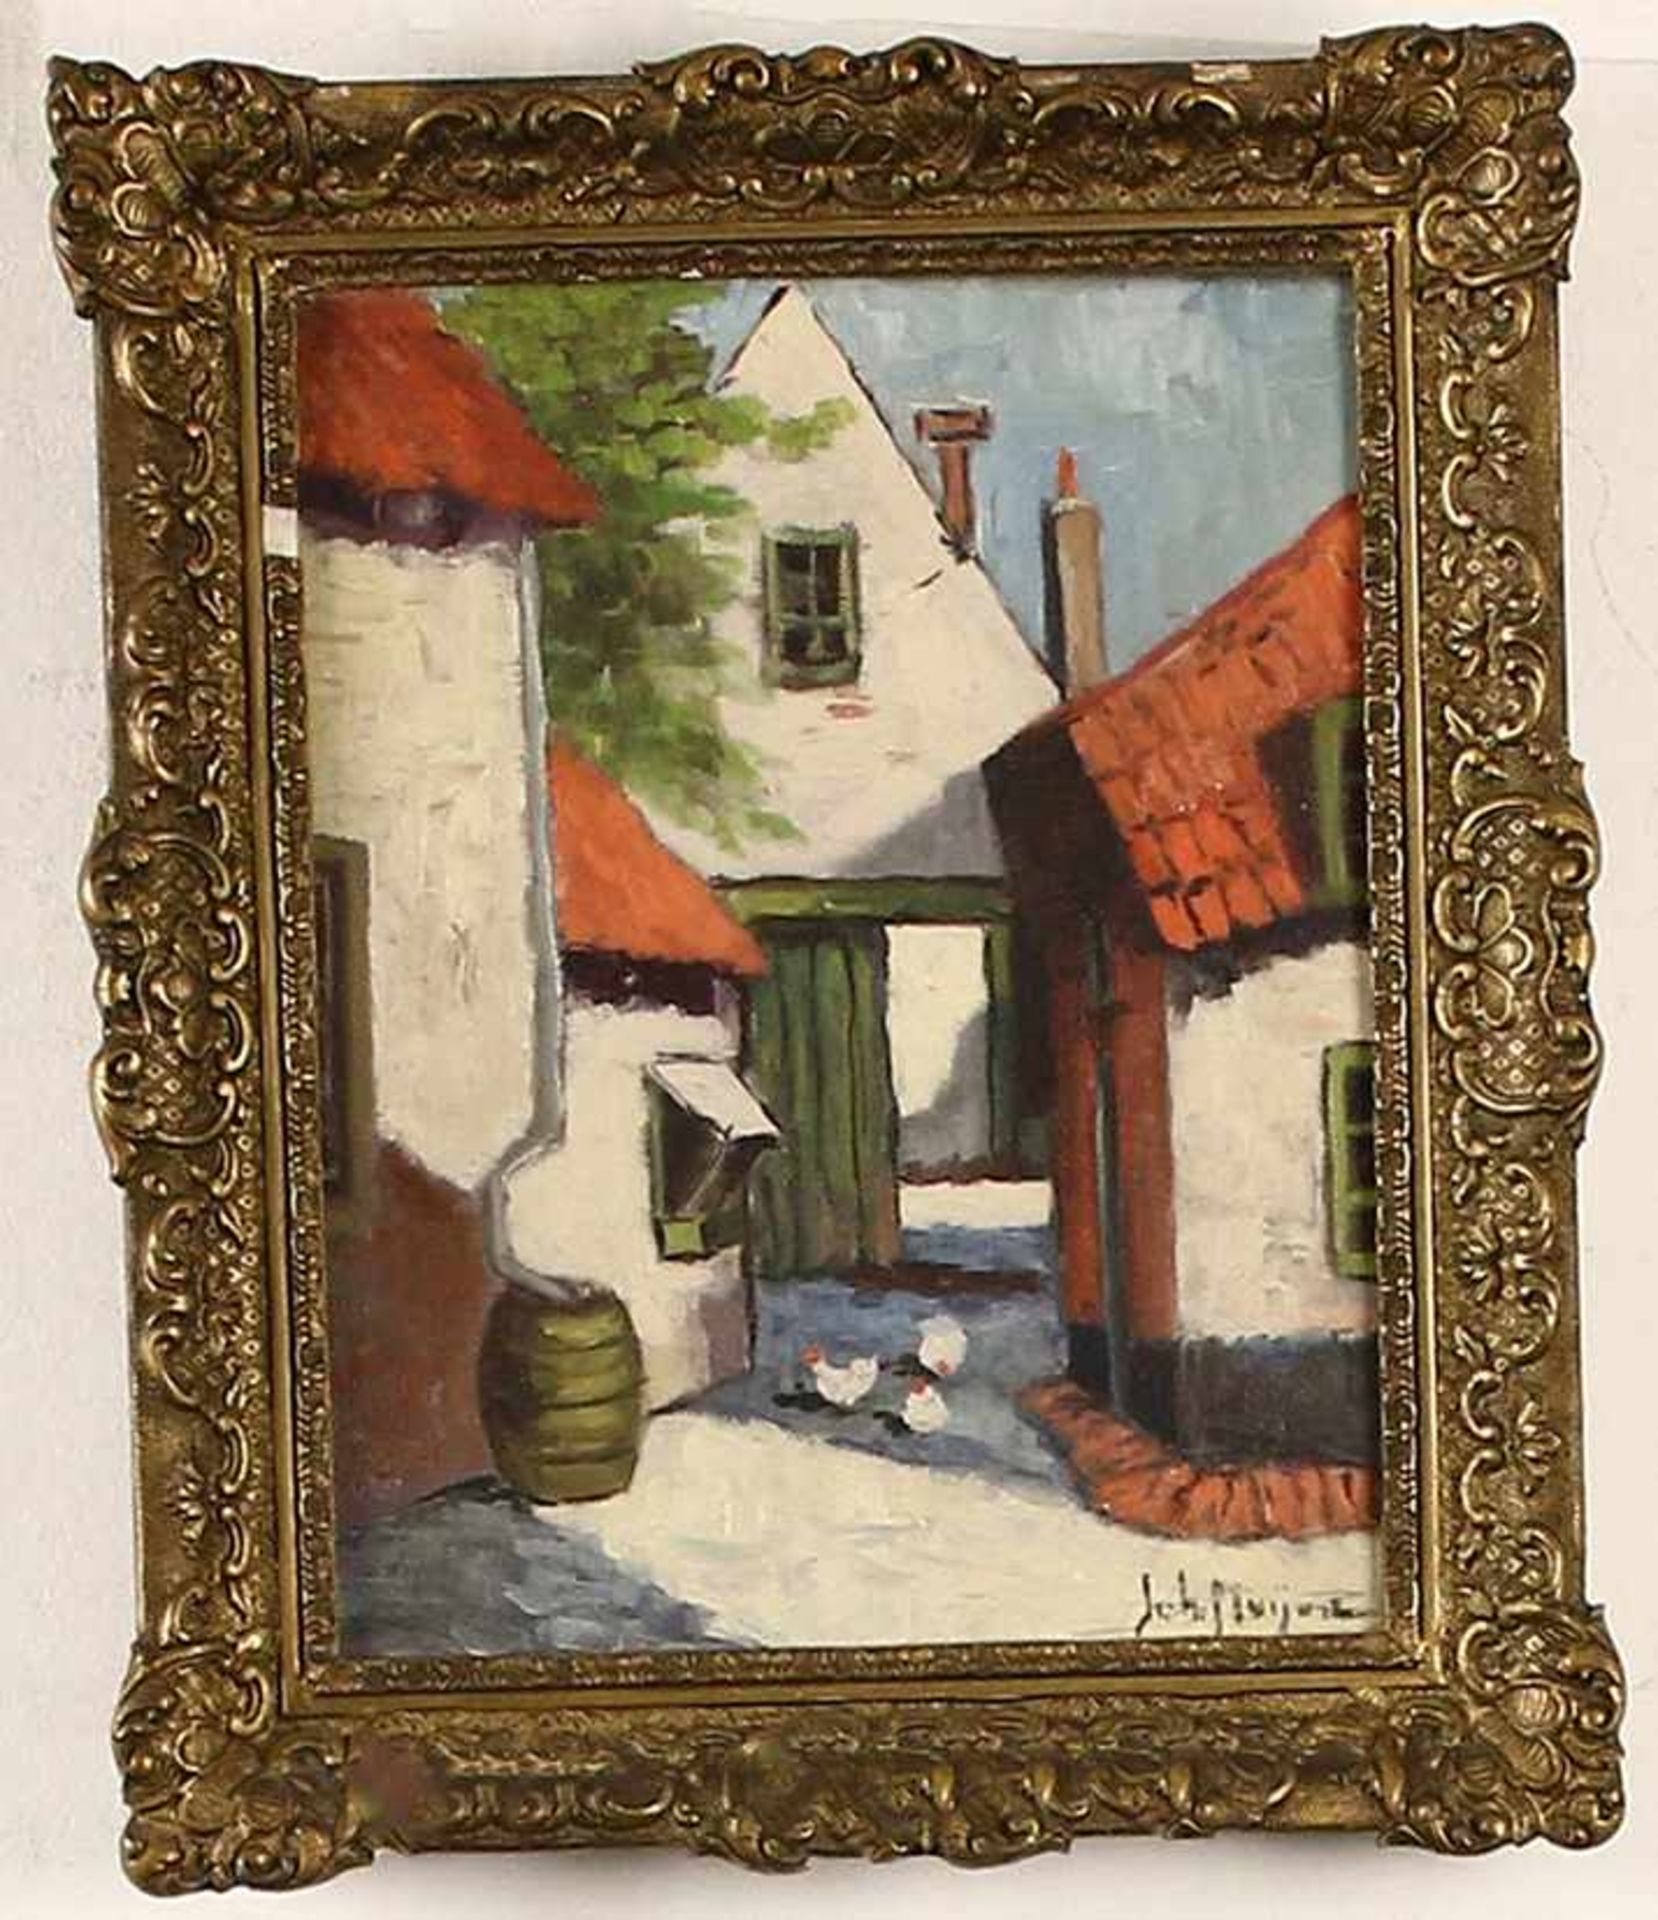 Johan Meijer (1885-1970), binnenplaatsje met kippen, olieverf op doek, gesigneerd -29,5 x 22,5 cm-